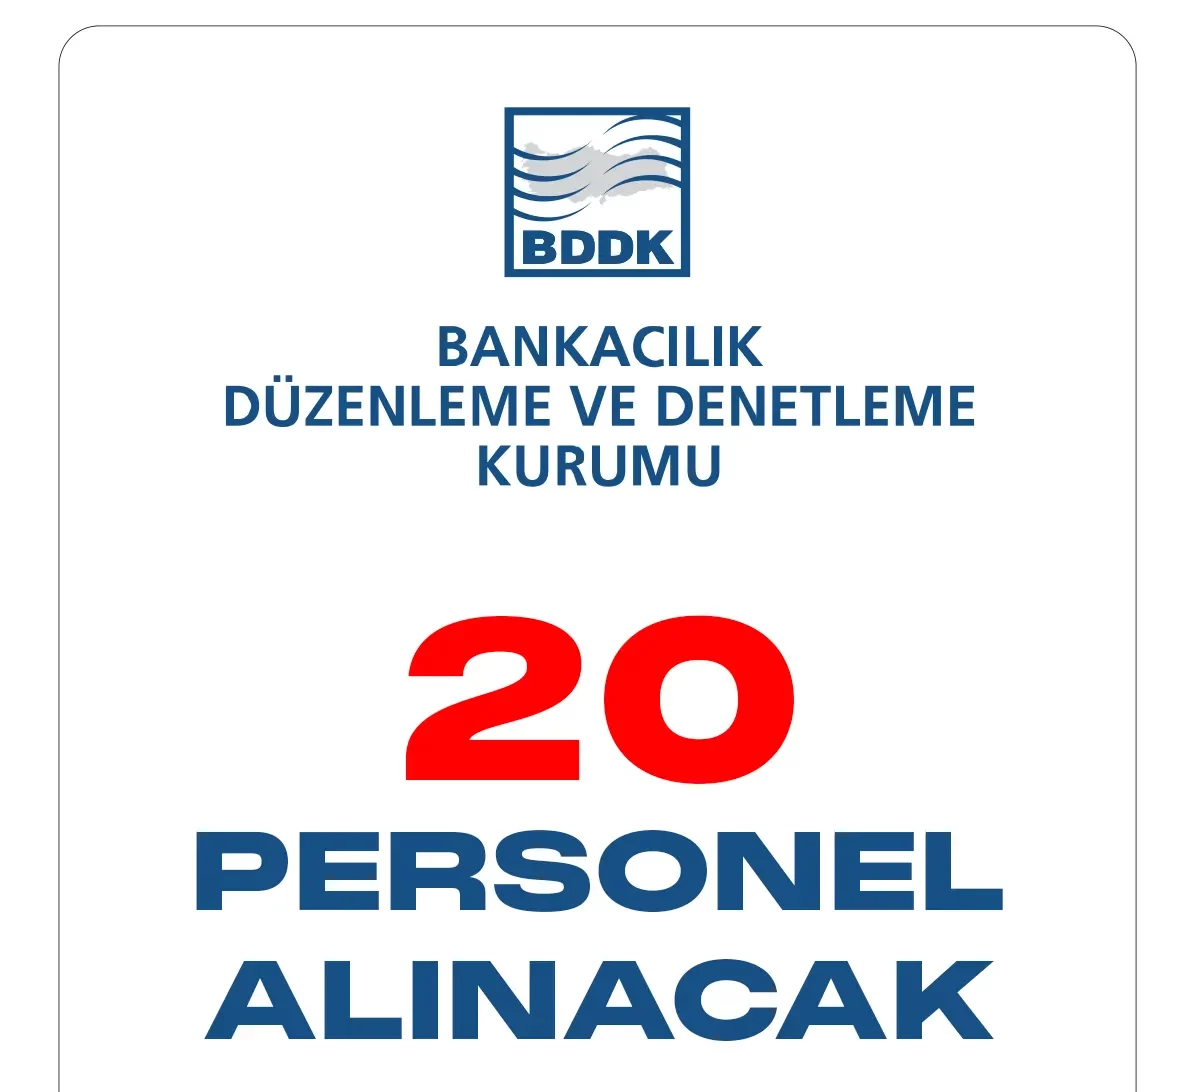 Bankacılık Düzenleme ve Denetleme Kurumu Başkanlığı (BDDK) personel alımı duyurusu yayımlandı.